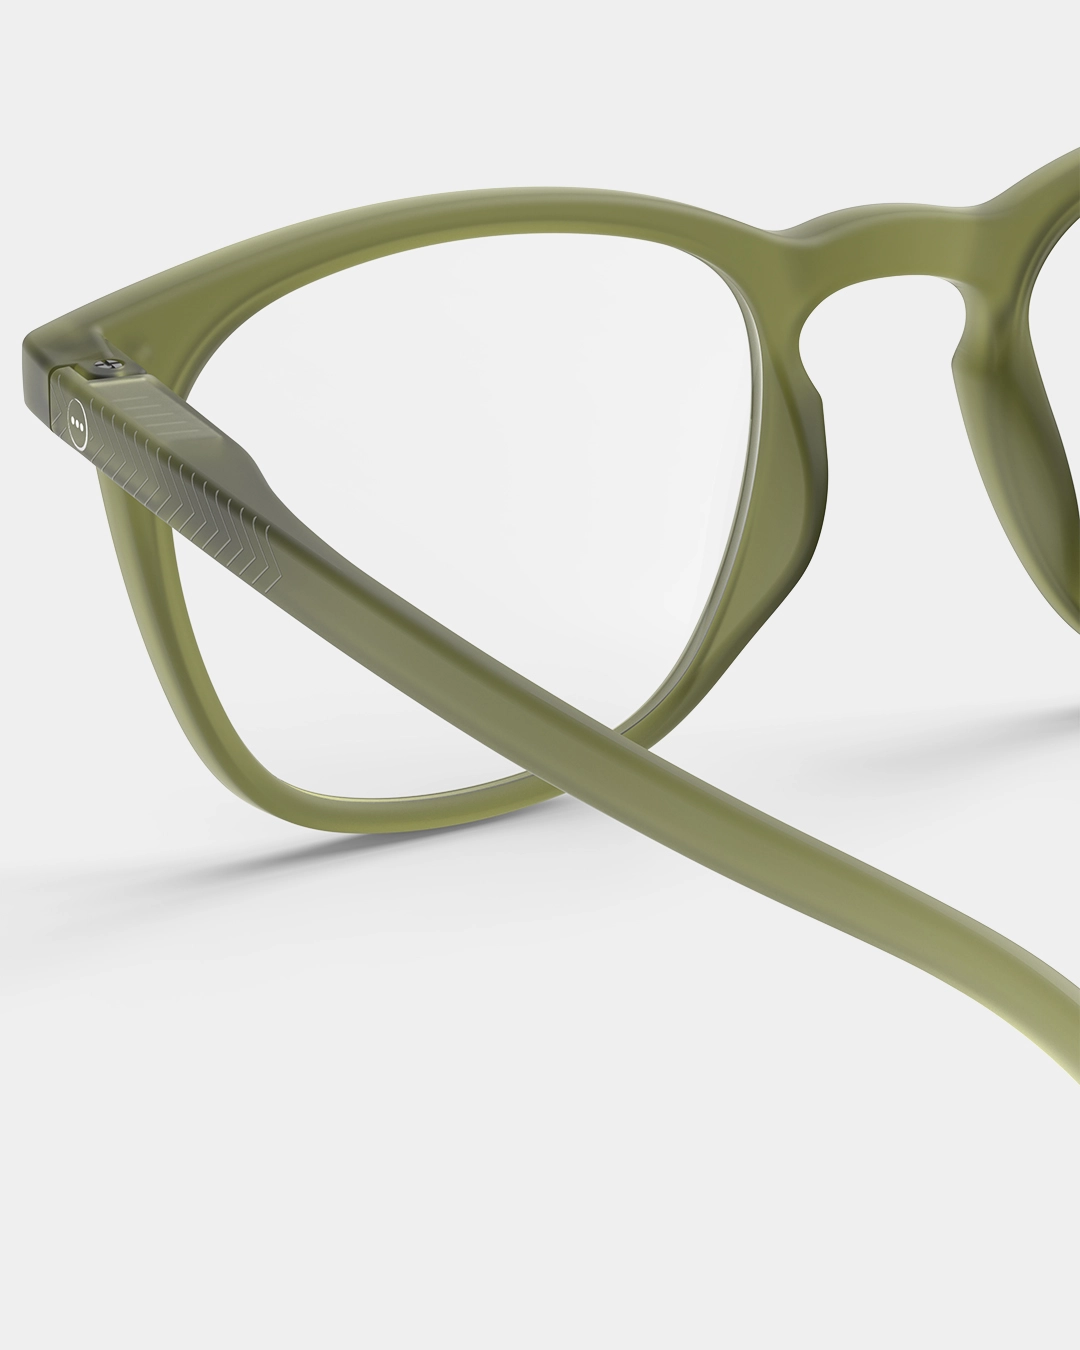 IZIPIZI #E Tailor Green Reading Screen Glasses